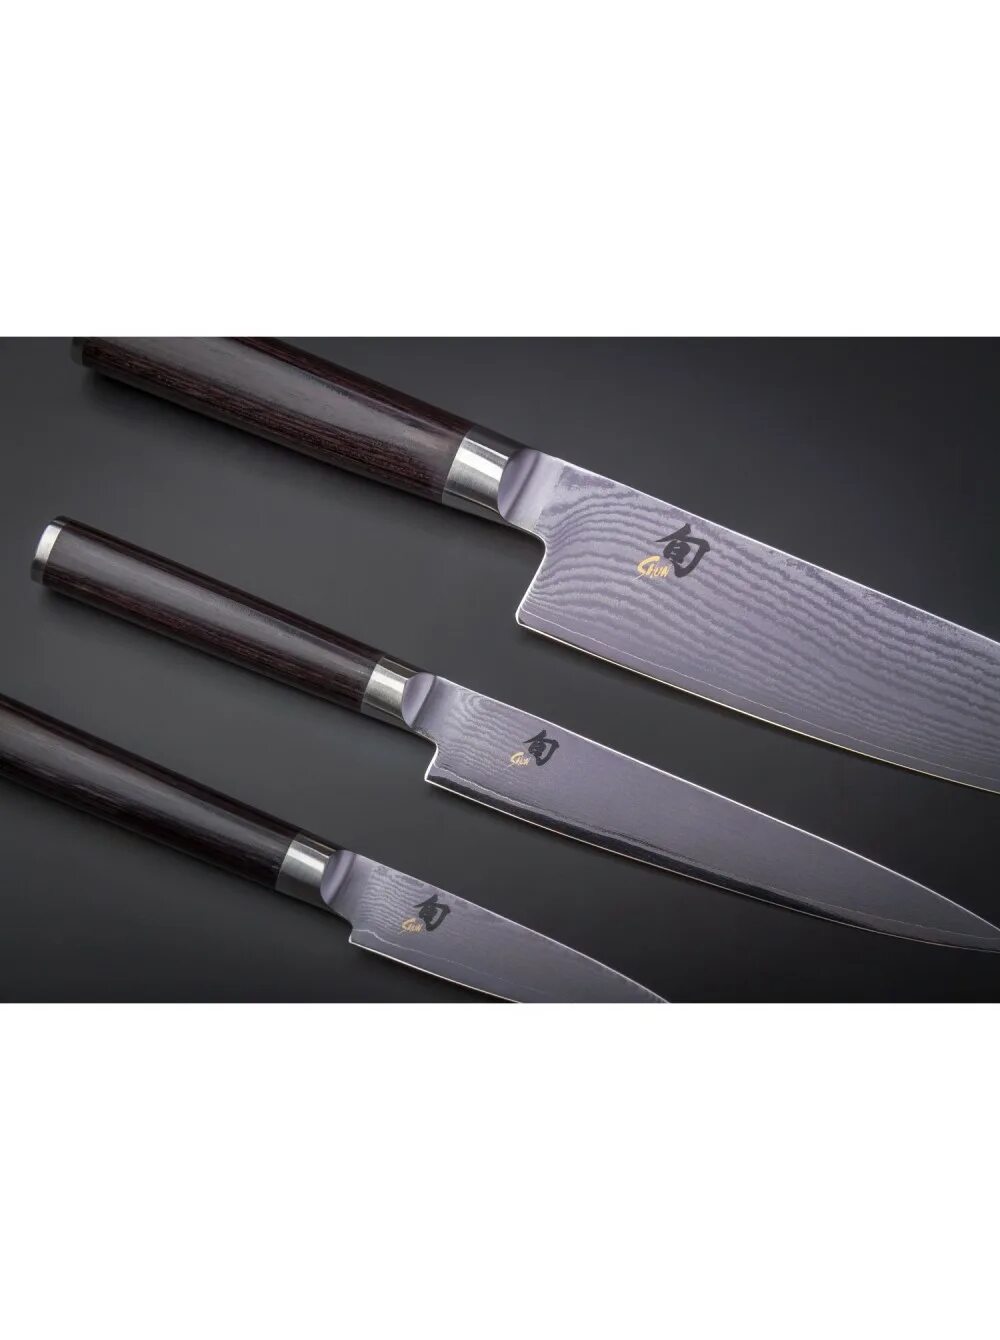 Нож кухонный купить в спб. Японские ножи Самура. Японские фирмы Kai кухонных ножей. Набор ножей Самура. Нож Самурай поварской.